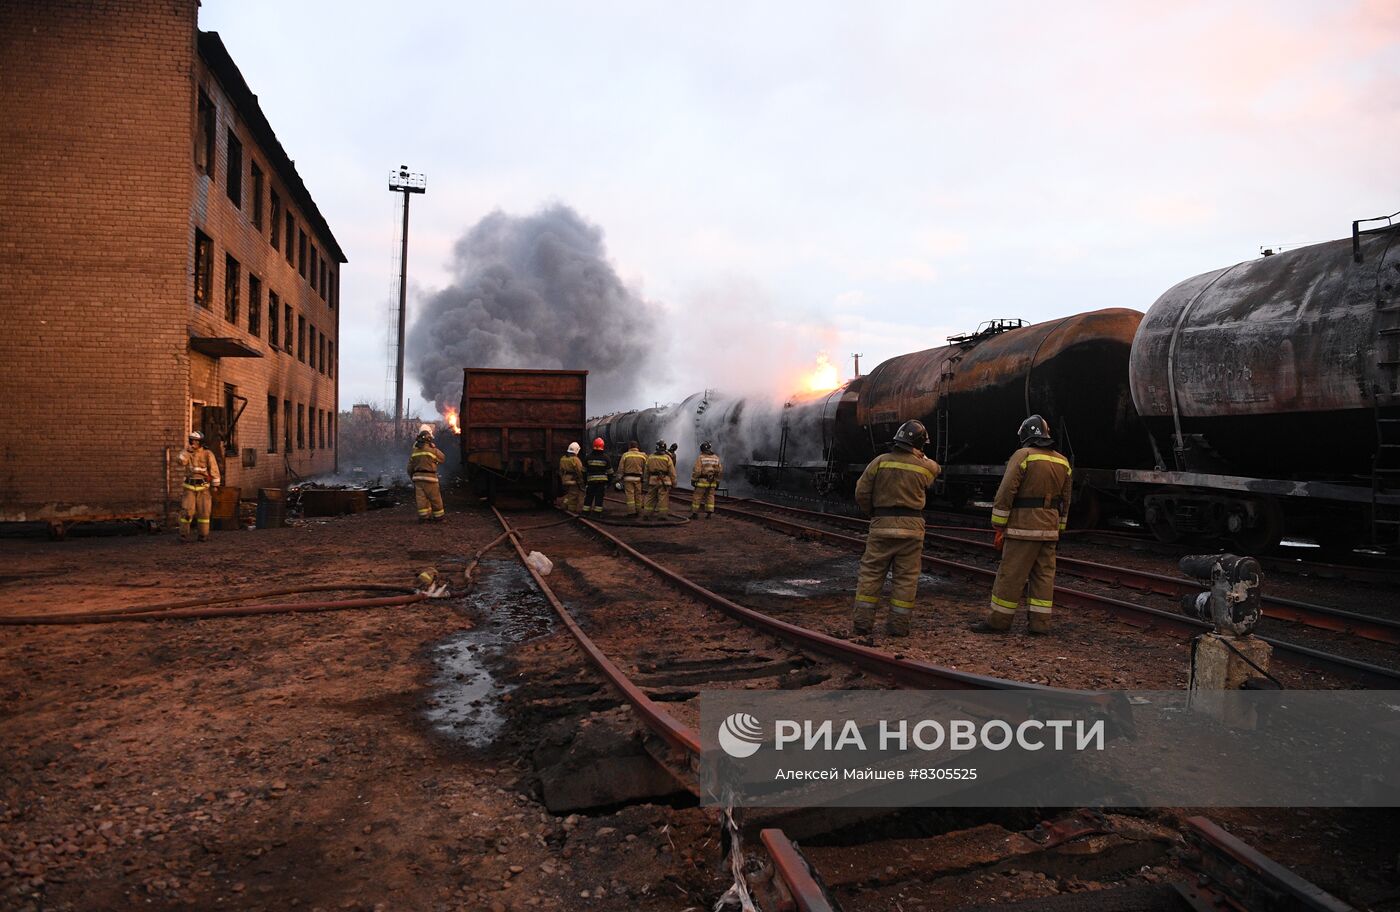 Последствия повторного обстрела ж/д станции в Шахтерске